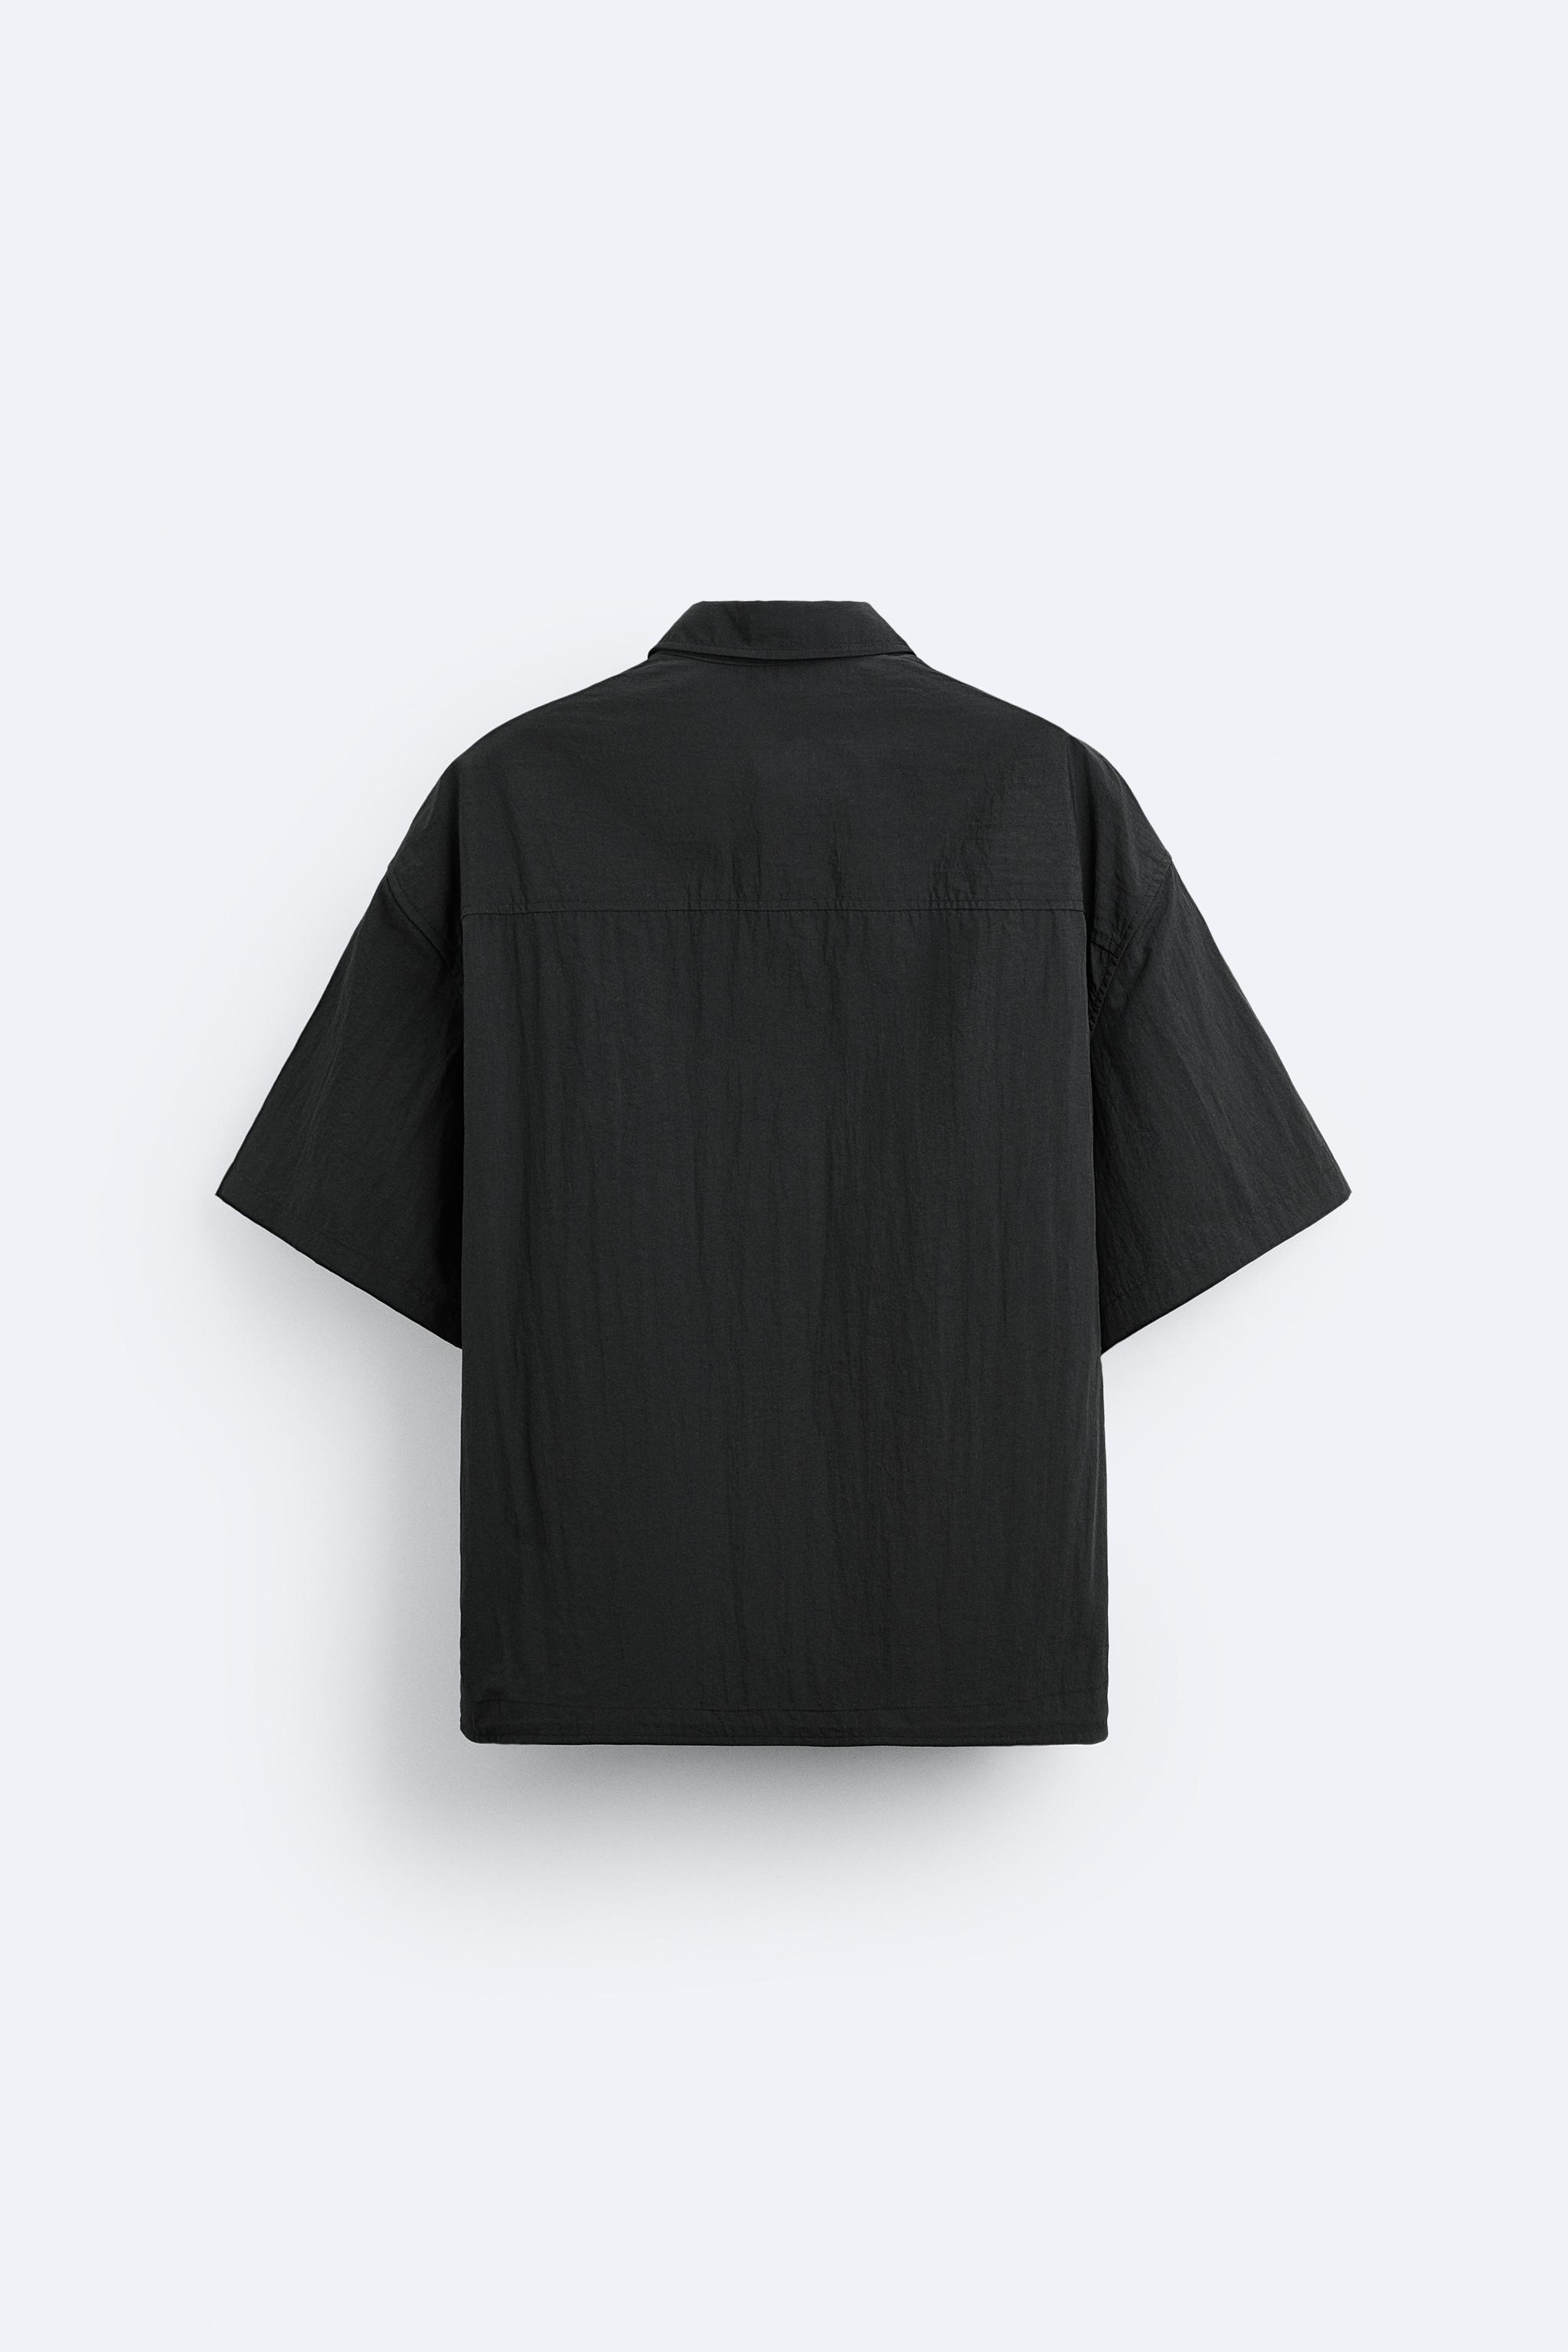 和鳥刺繍XLサイズ】glambオープンカラー ZARA ブラックアイパッチ - シャツ